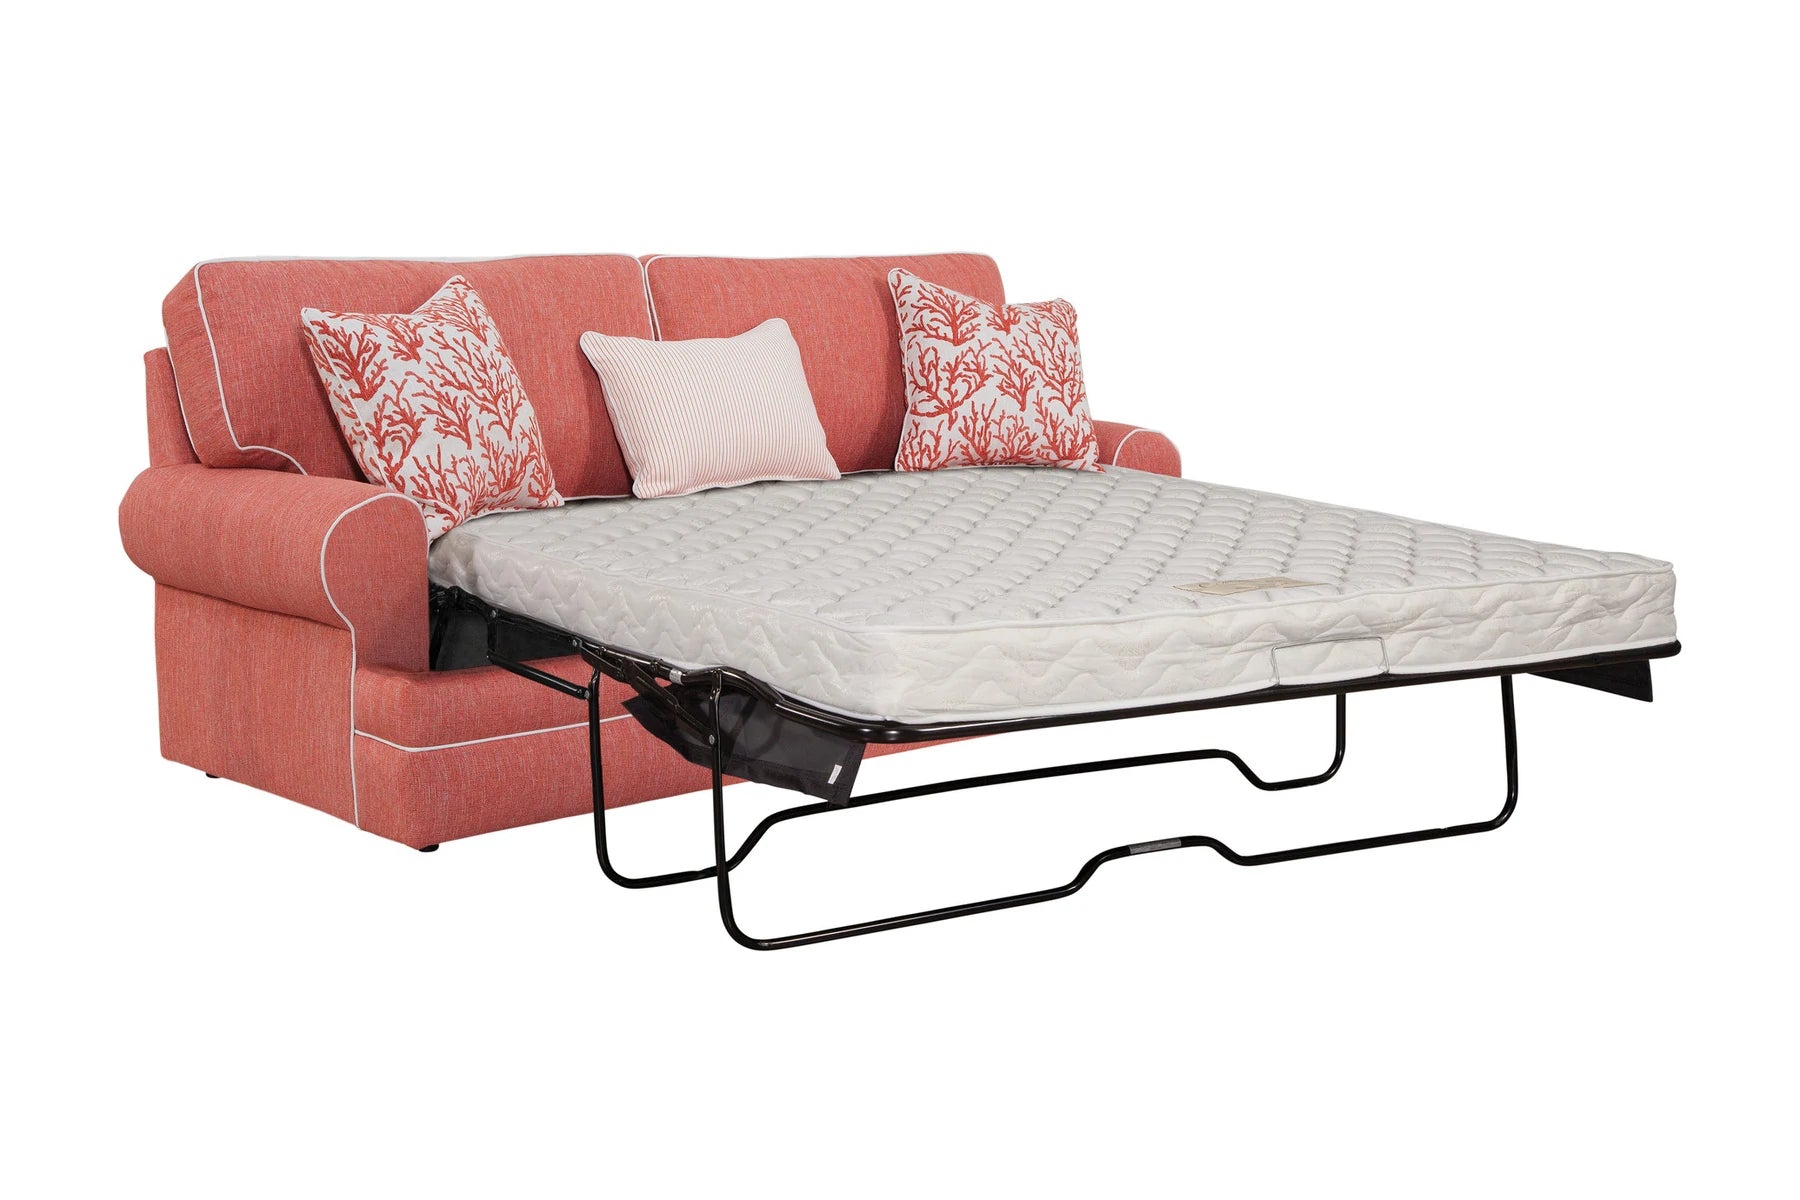 S260C Sleeper Sofa and Ottoman Set